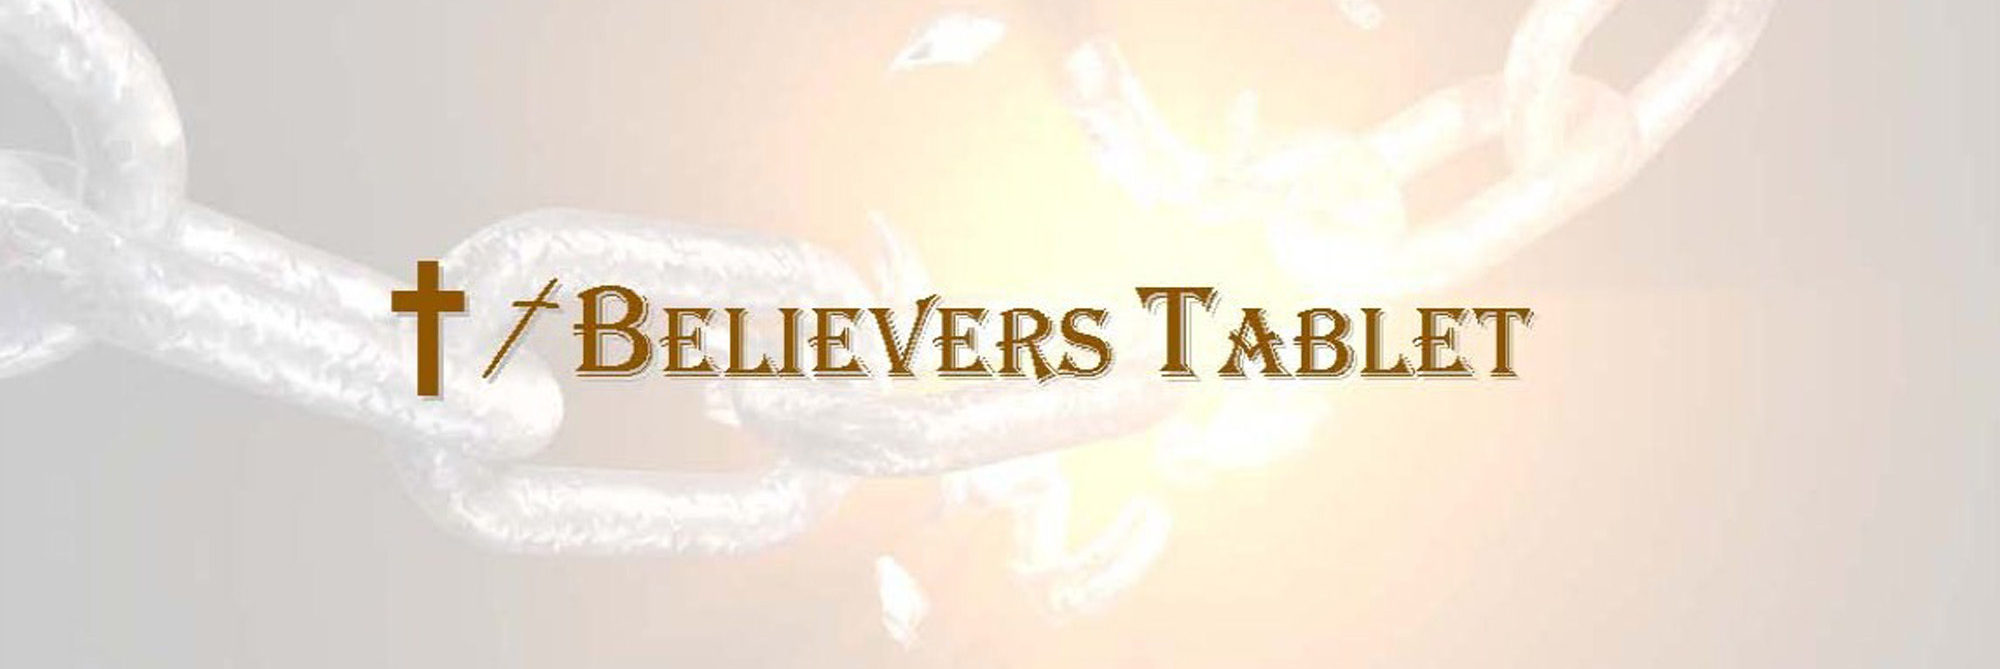 BELIEVERS TABLET